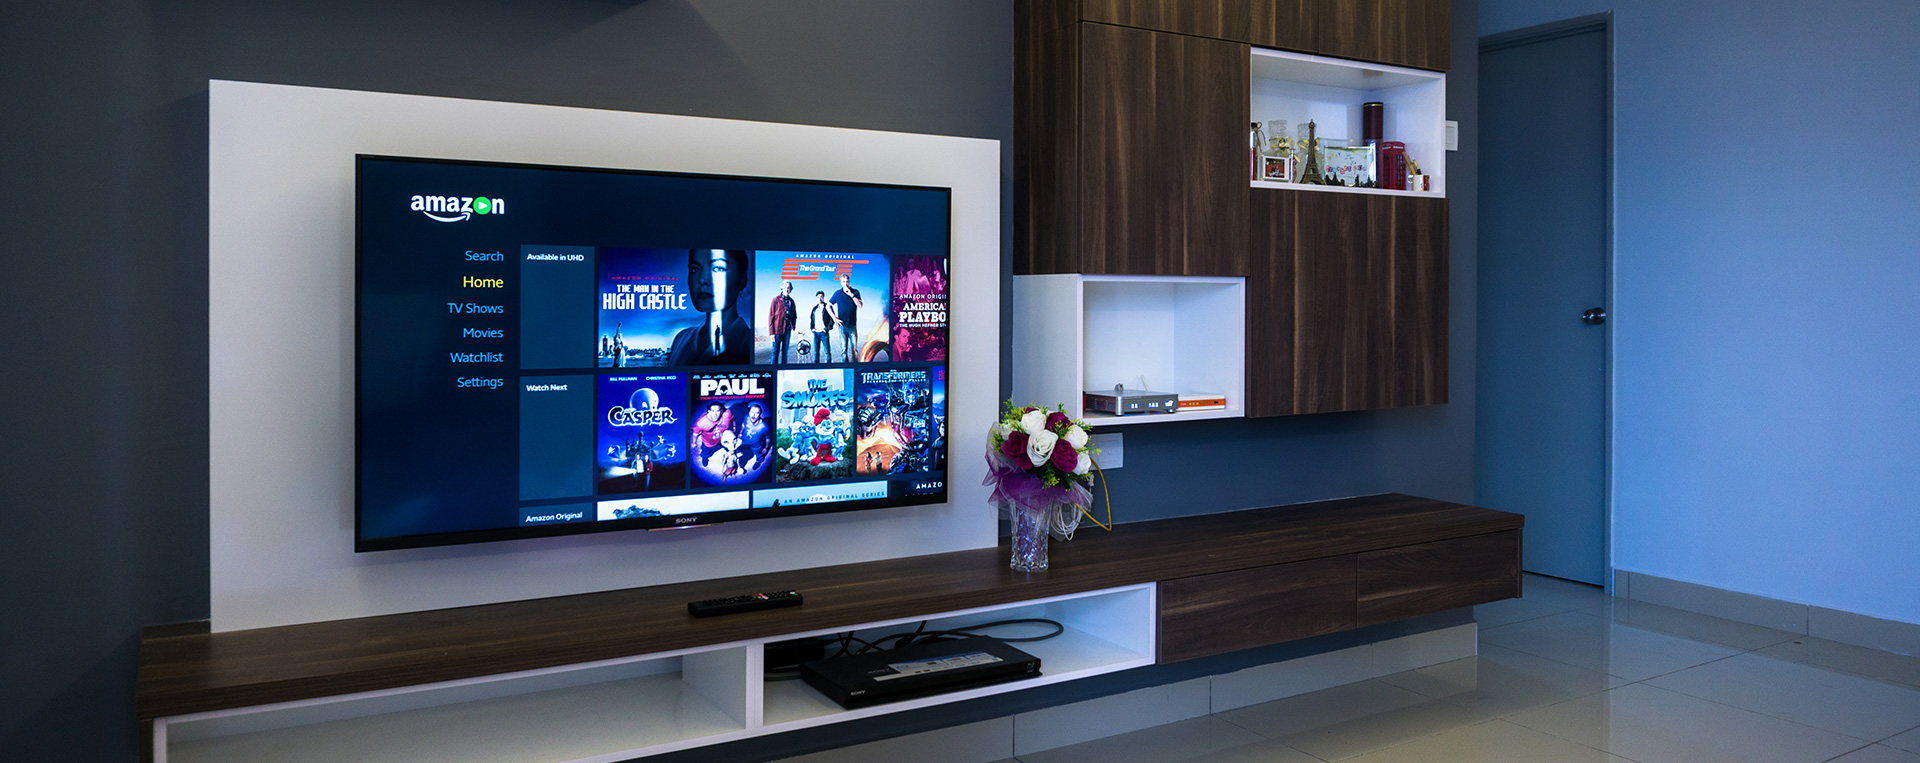 Smart TV, Televisi Pintar Terkini untuk Masyarakat Modern